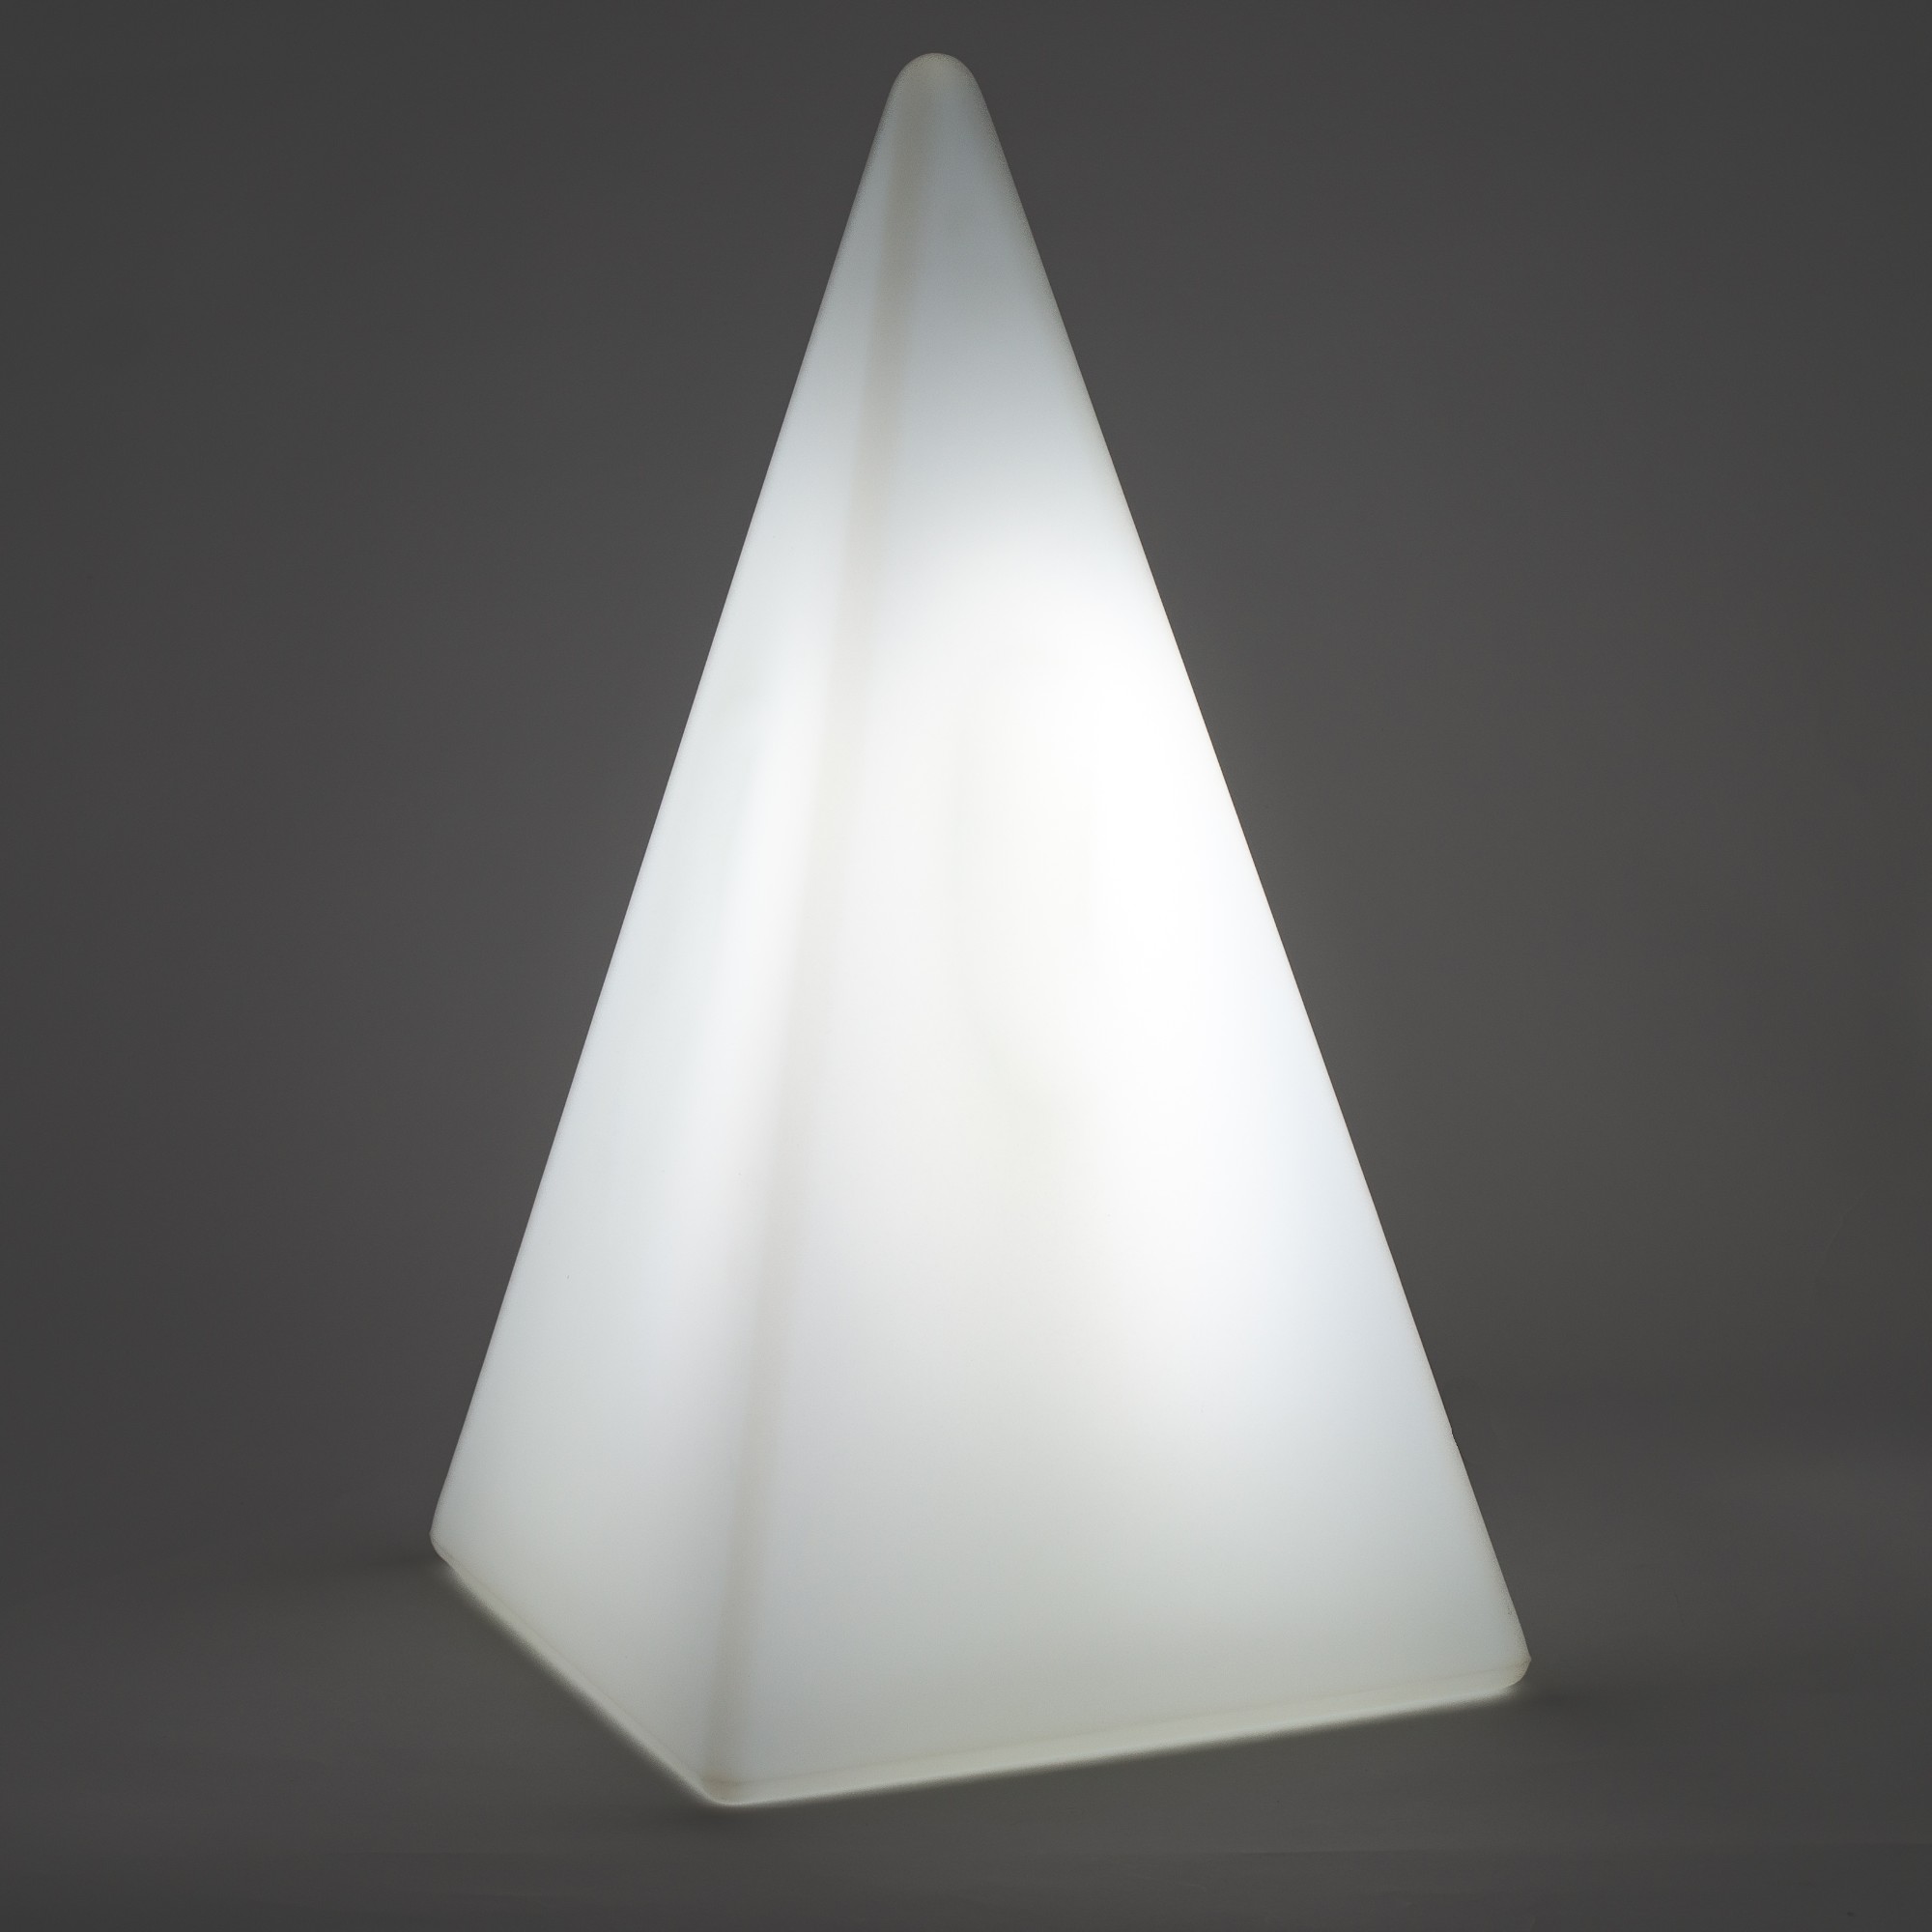 70307 Standleuchte Pyramide 73 cm der Firma EPSTEIN Design Leuchten